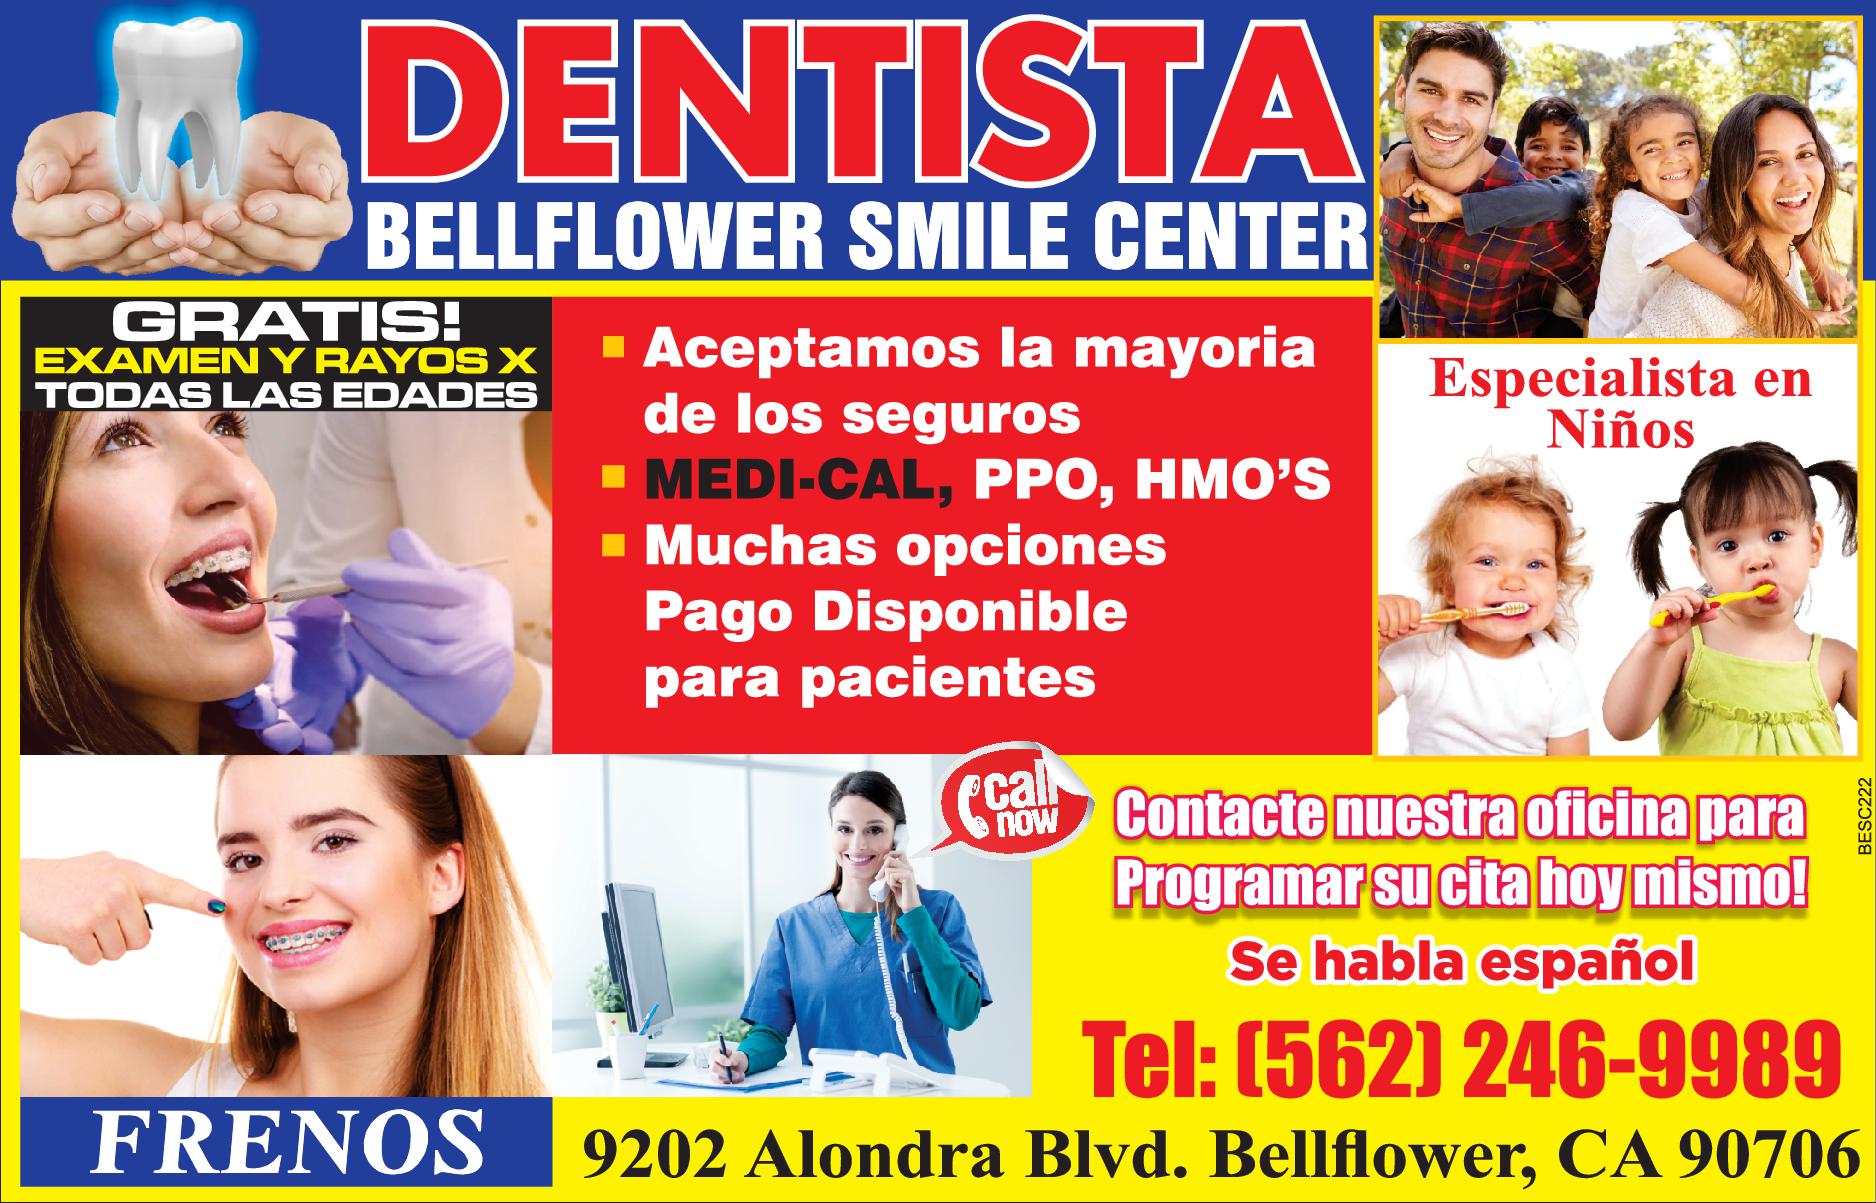 Bellflower Smile Center